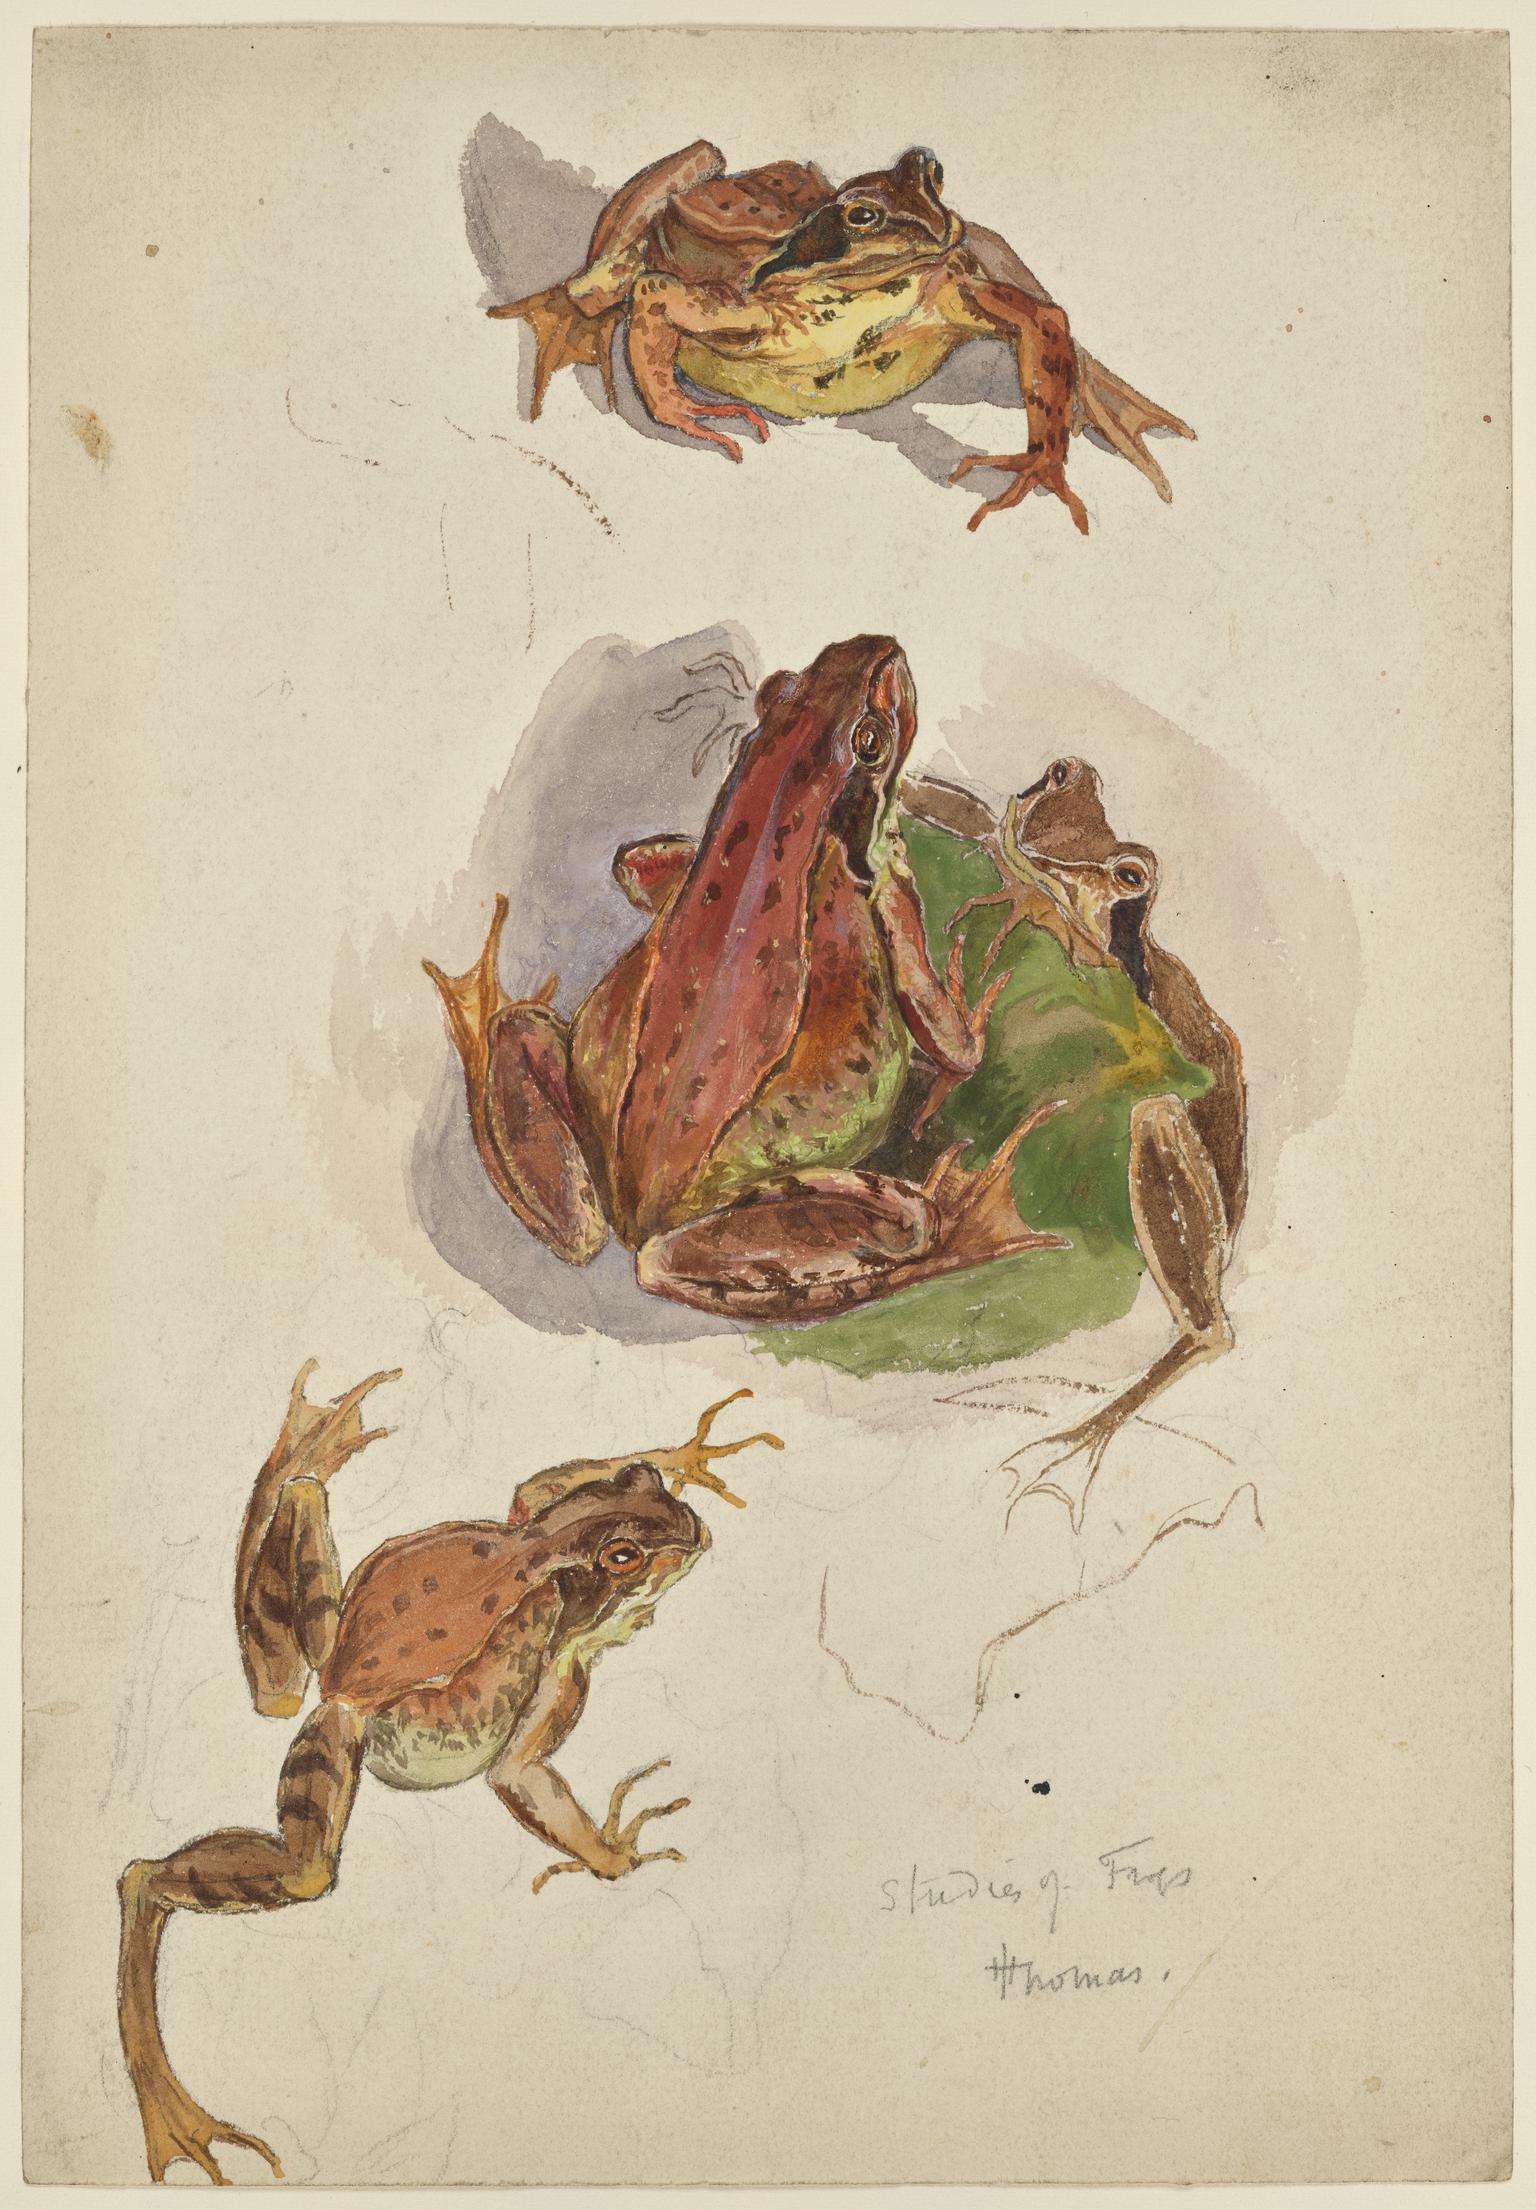 Studies of frogs